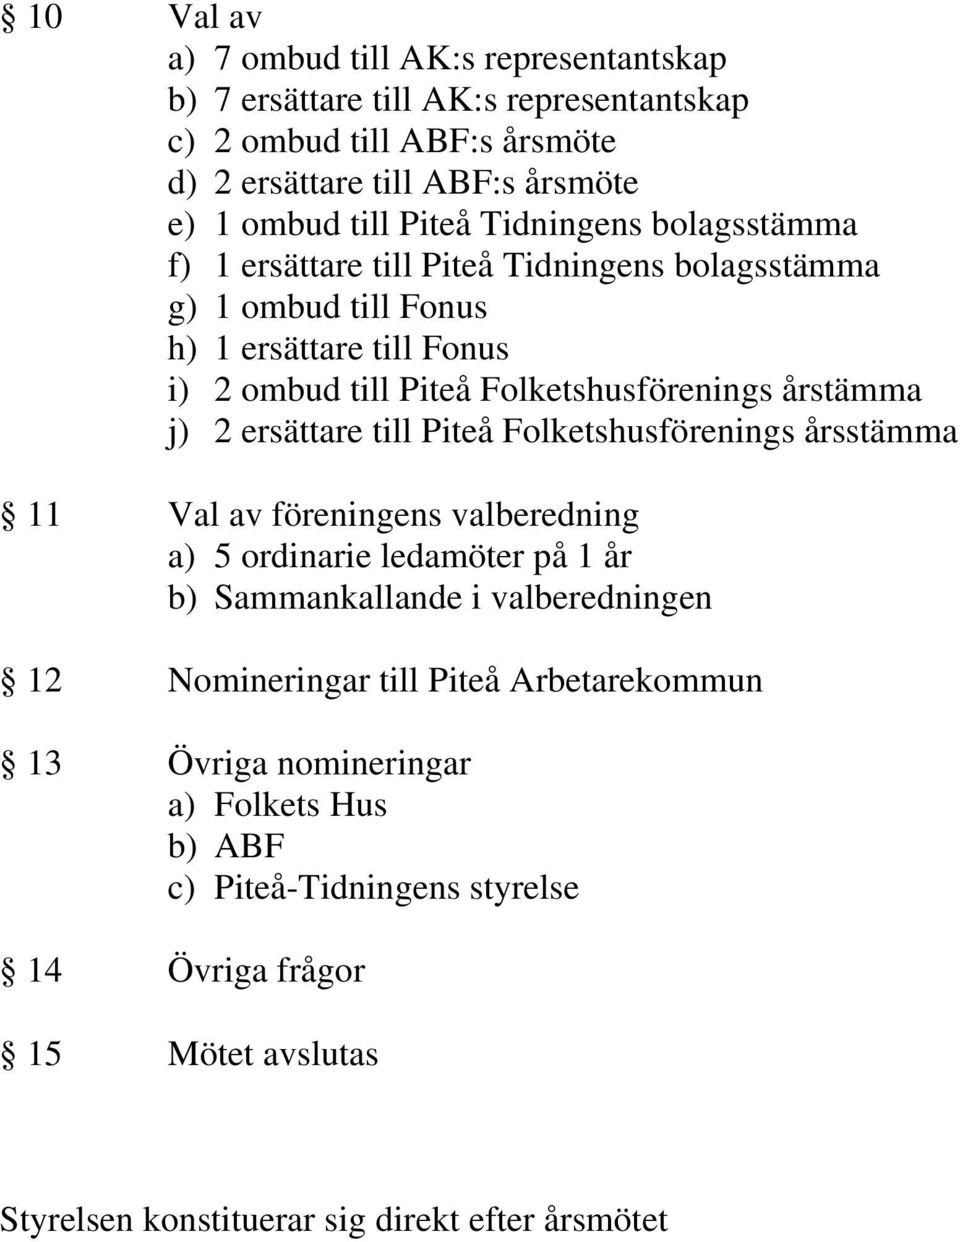 2 ersättare till Piteå Folketshusförenings årsstämma 11 Val av föreningens valberedning a) 5 ordinarie ledamöter på 1 år b) Sammankallande i valberedningen 12 Nomineringar till